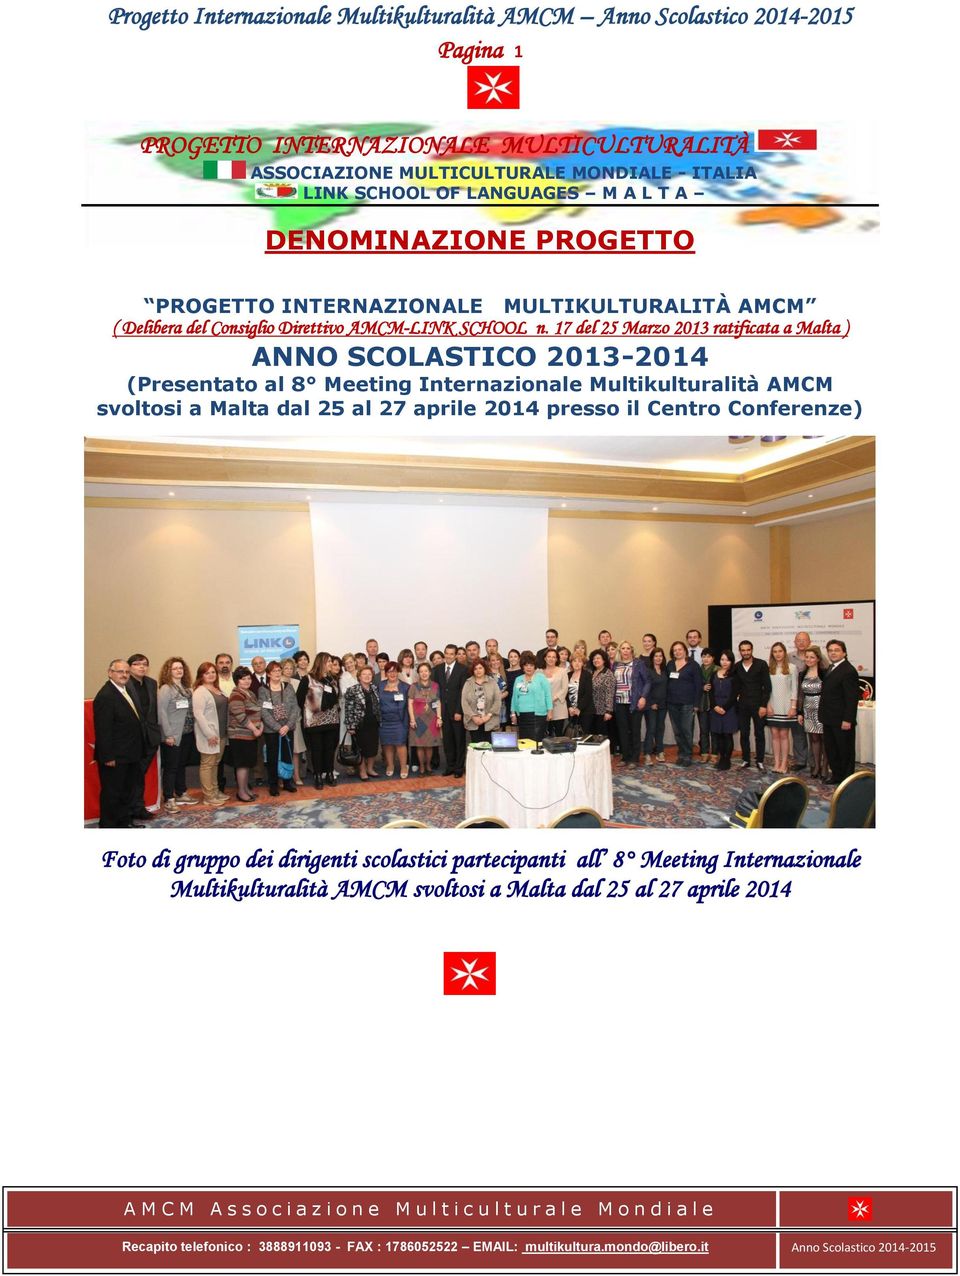 17 del 25 Marzo 2013 ratificata a Malta ) ANNO SCOLASTICO 2013-2014 (Presentato al 8 Meeting Internazionale Multikulturalità AMCM svoltosi a Malta dal